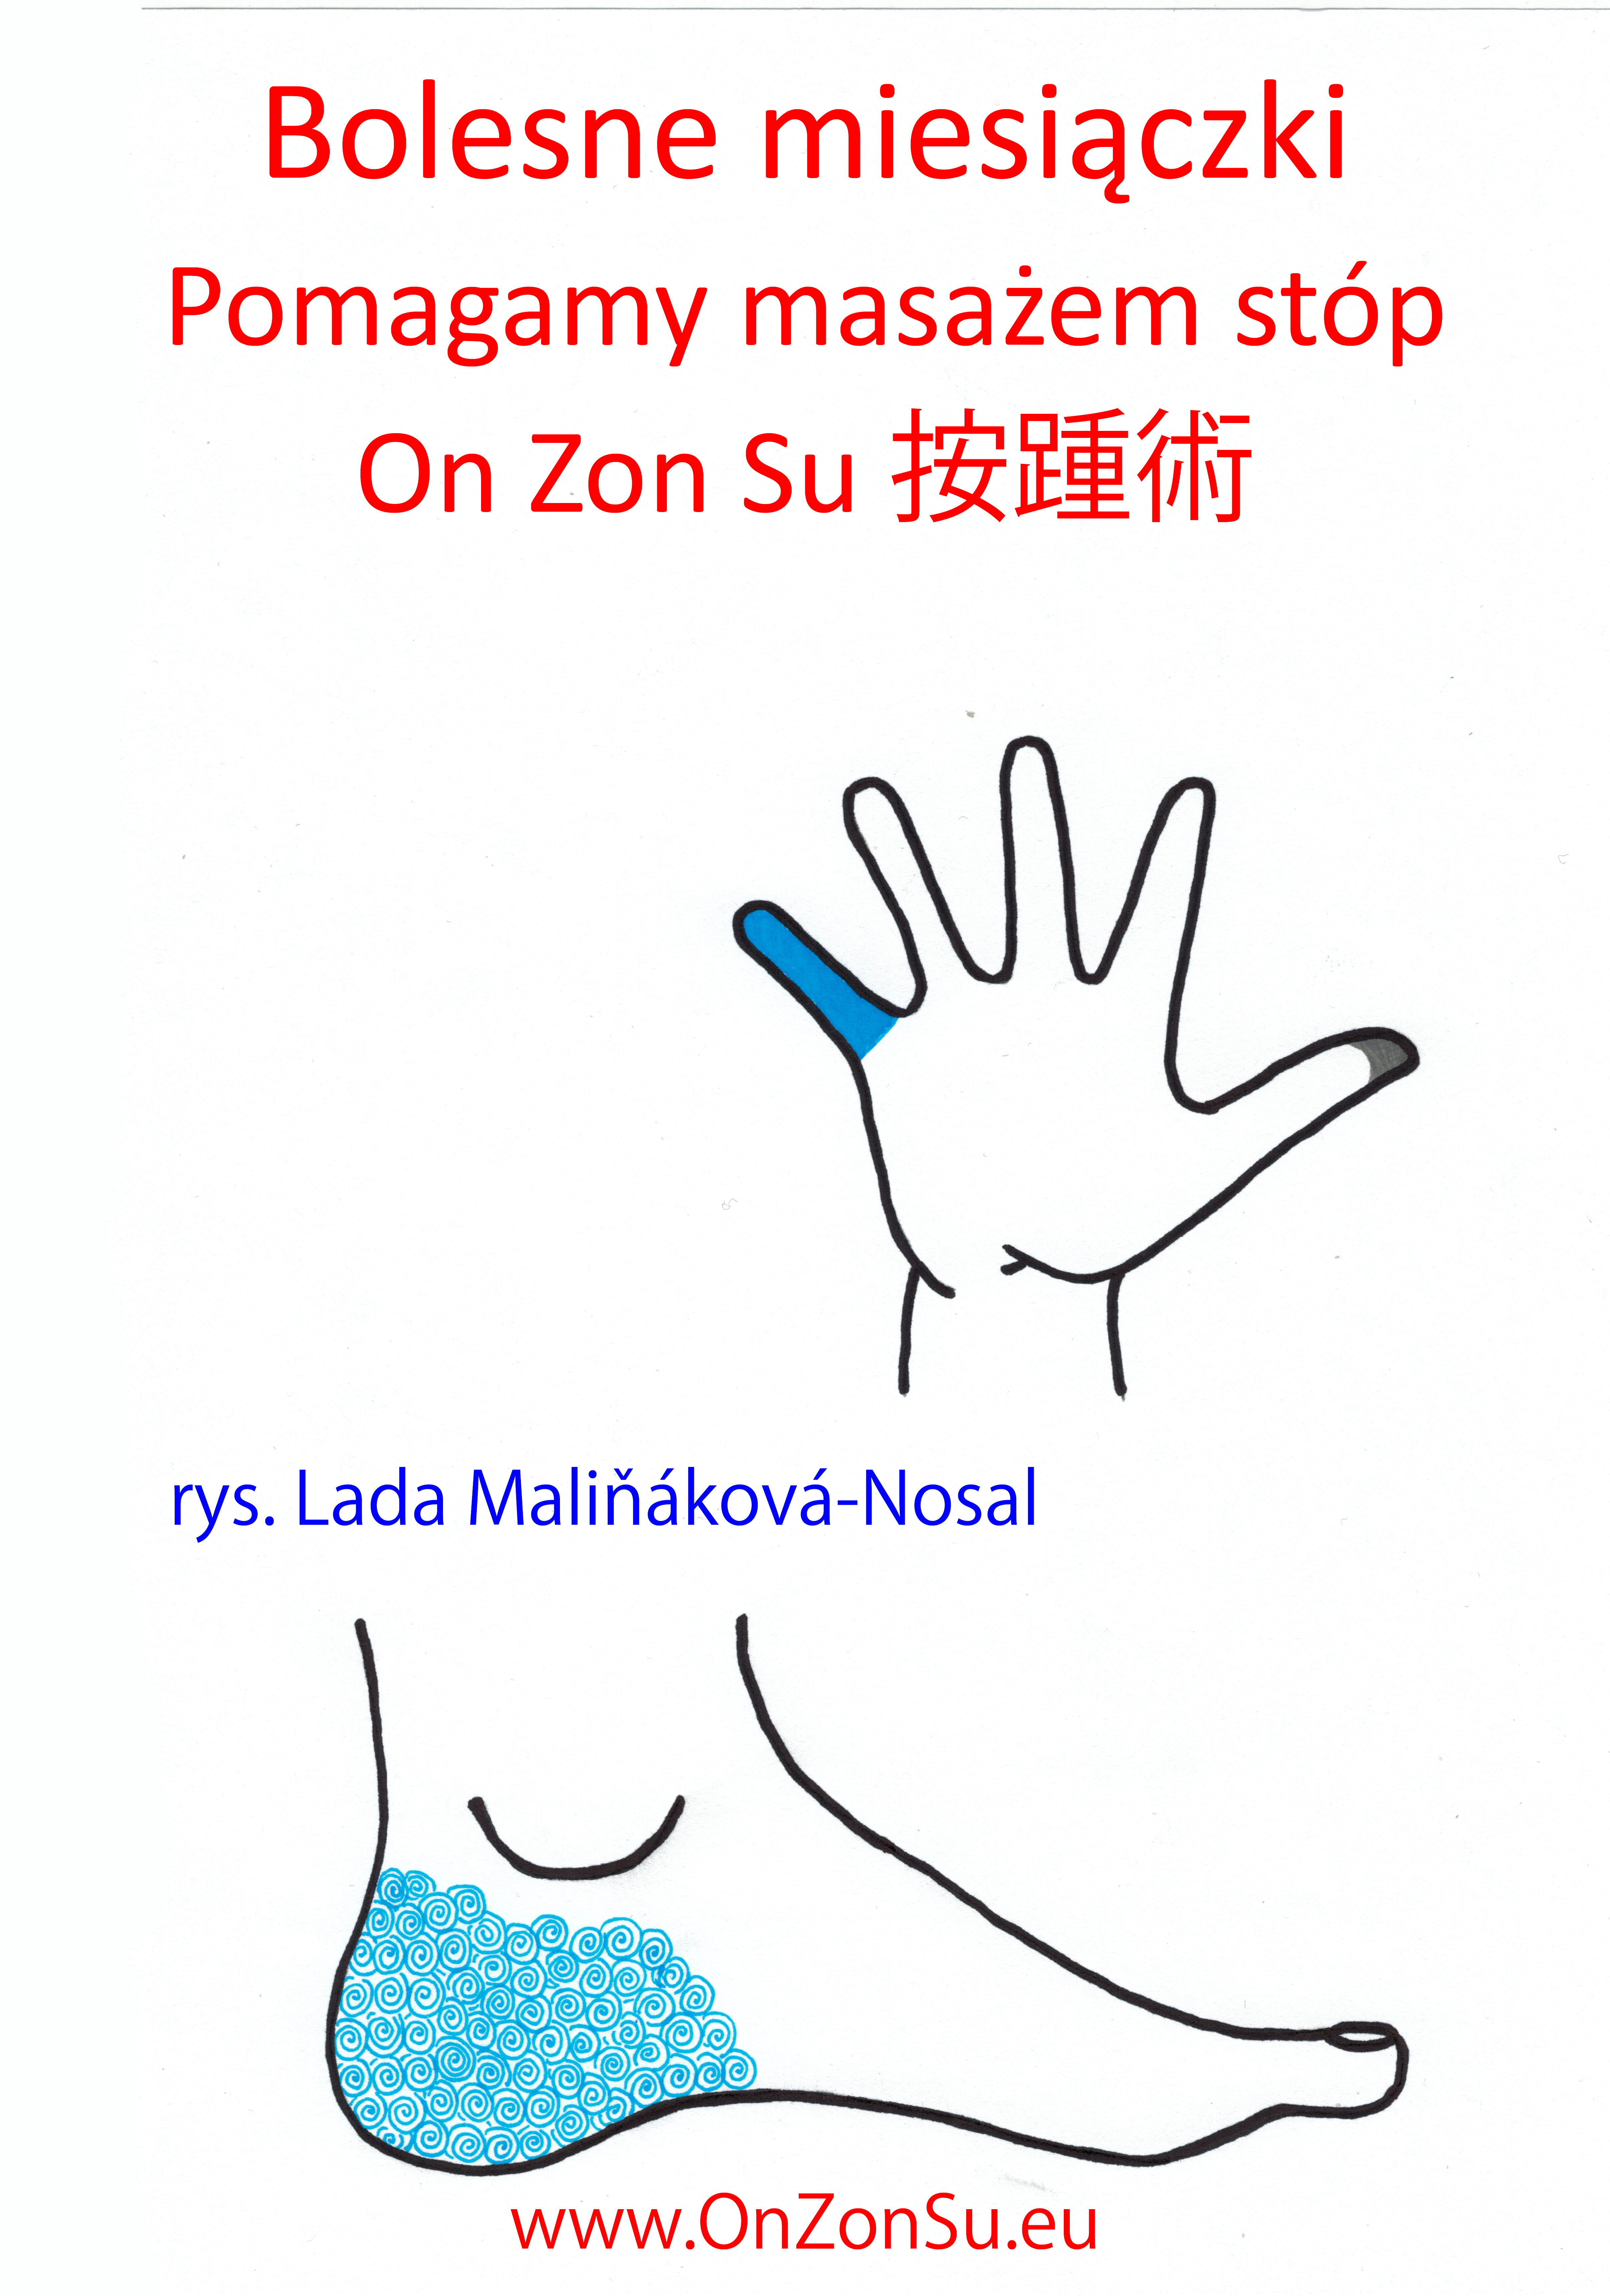 Kurs masażu stóp On Zon Su, Szkolenia refleksologii stóp - Bolesne miesiączki MEM.jpg